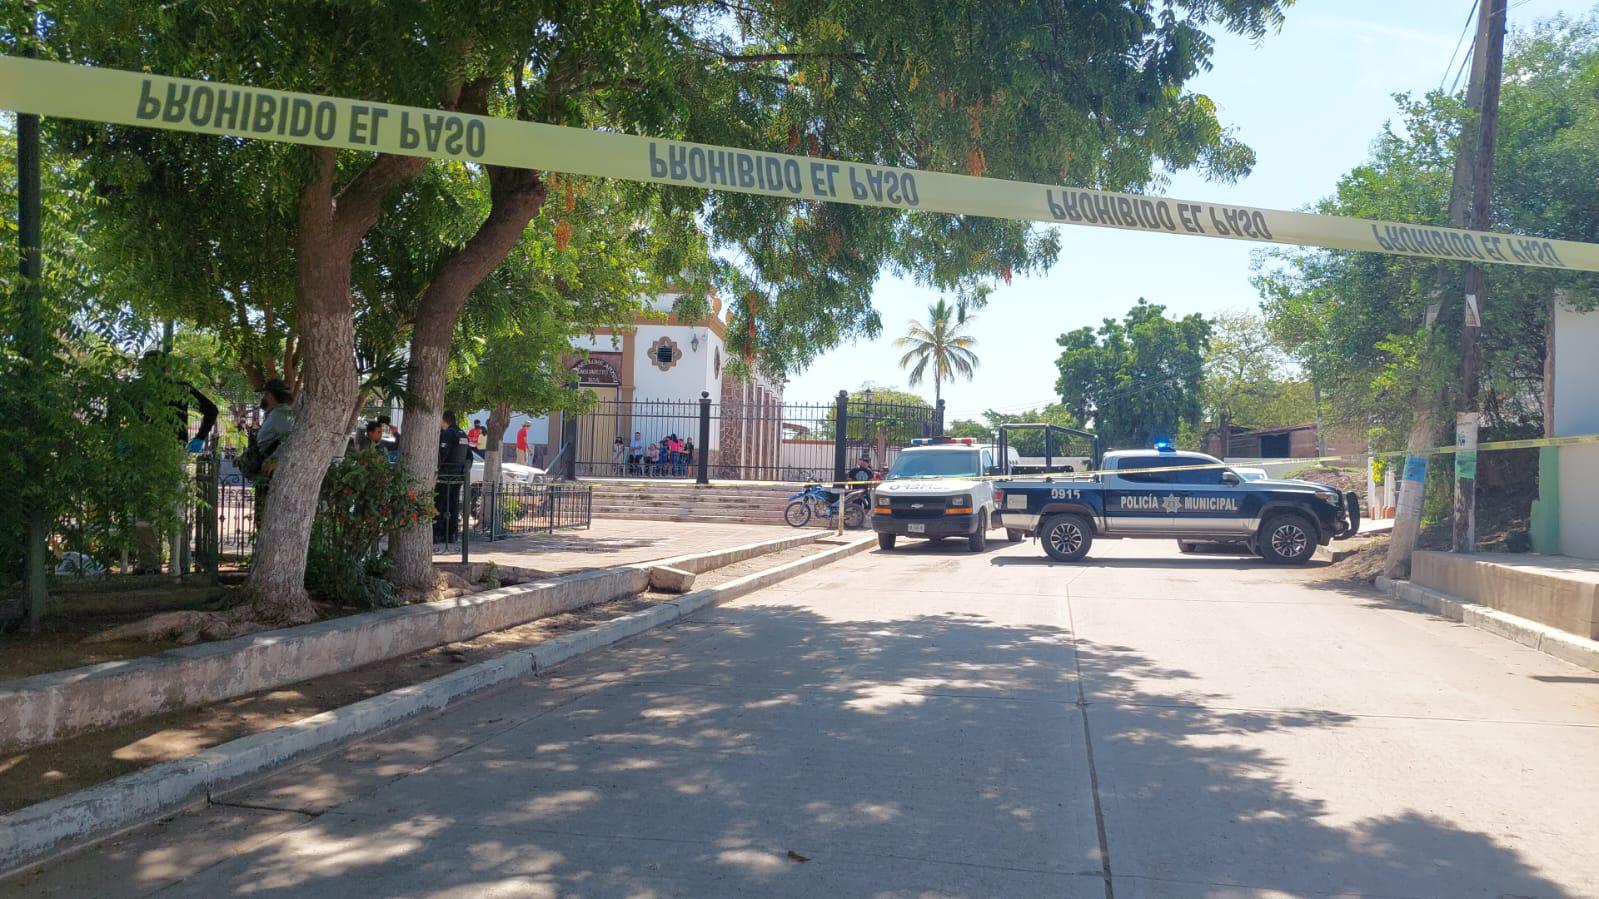 $!Asesinan a un hombre frente a iglesia de Aguaruto, Culiacán